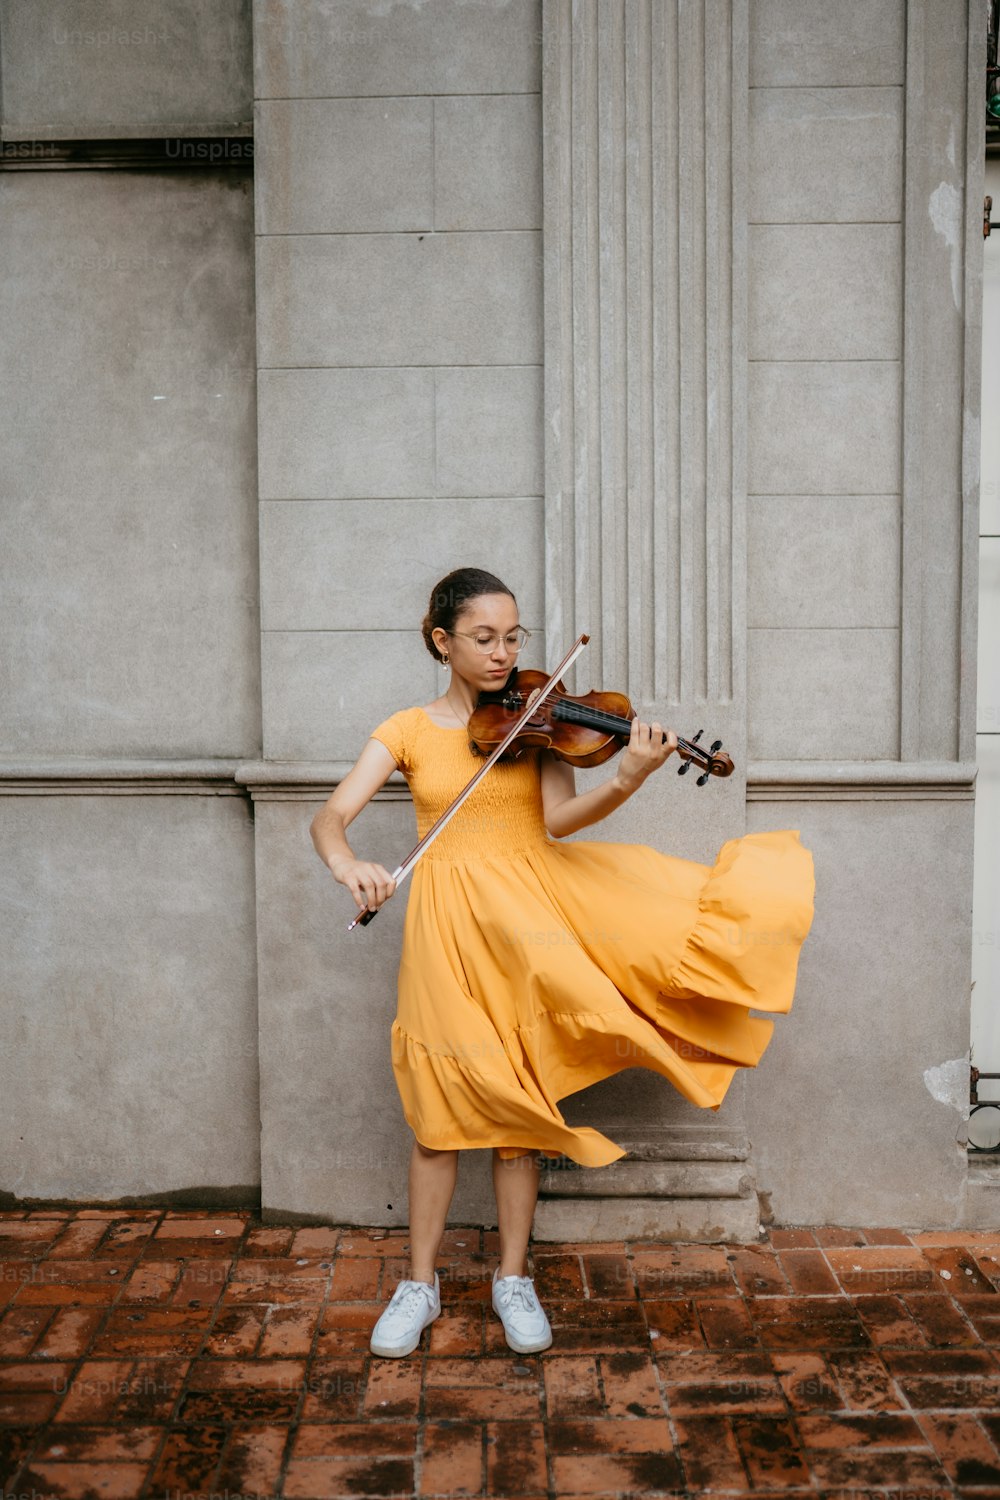 노란색 드레스를 입은 여성이 바이올린을 연주하고 있다